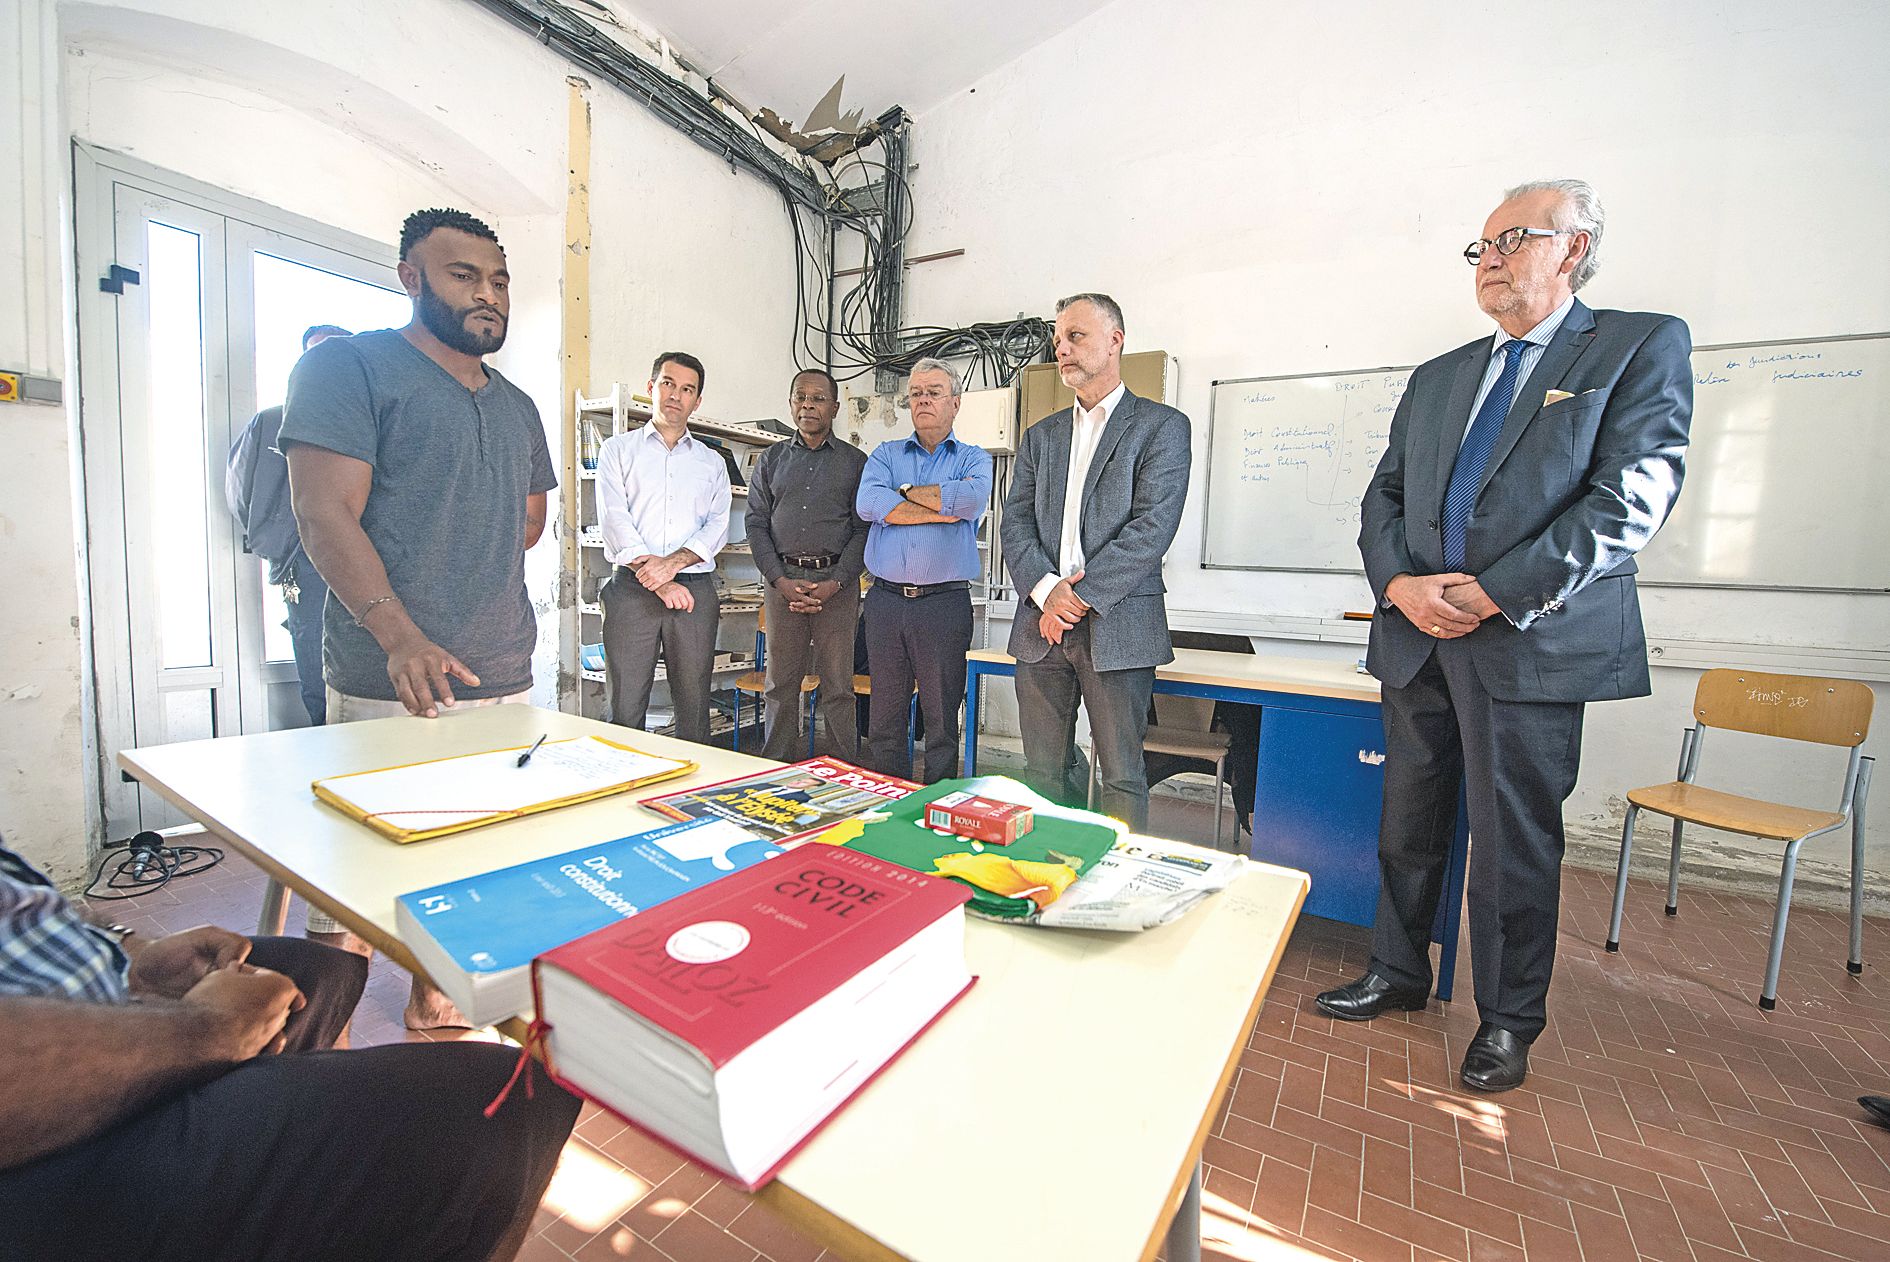 Pascal Eydoux, président du Conseil national des barreaux (à droite), a remis les diplômes aux détenus : « Nous savons que si vous êtes ici, c’est que la vie n’a pas toujours été tendre avec vous tous les jours. J’espère que cet enseignement vous permettr